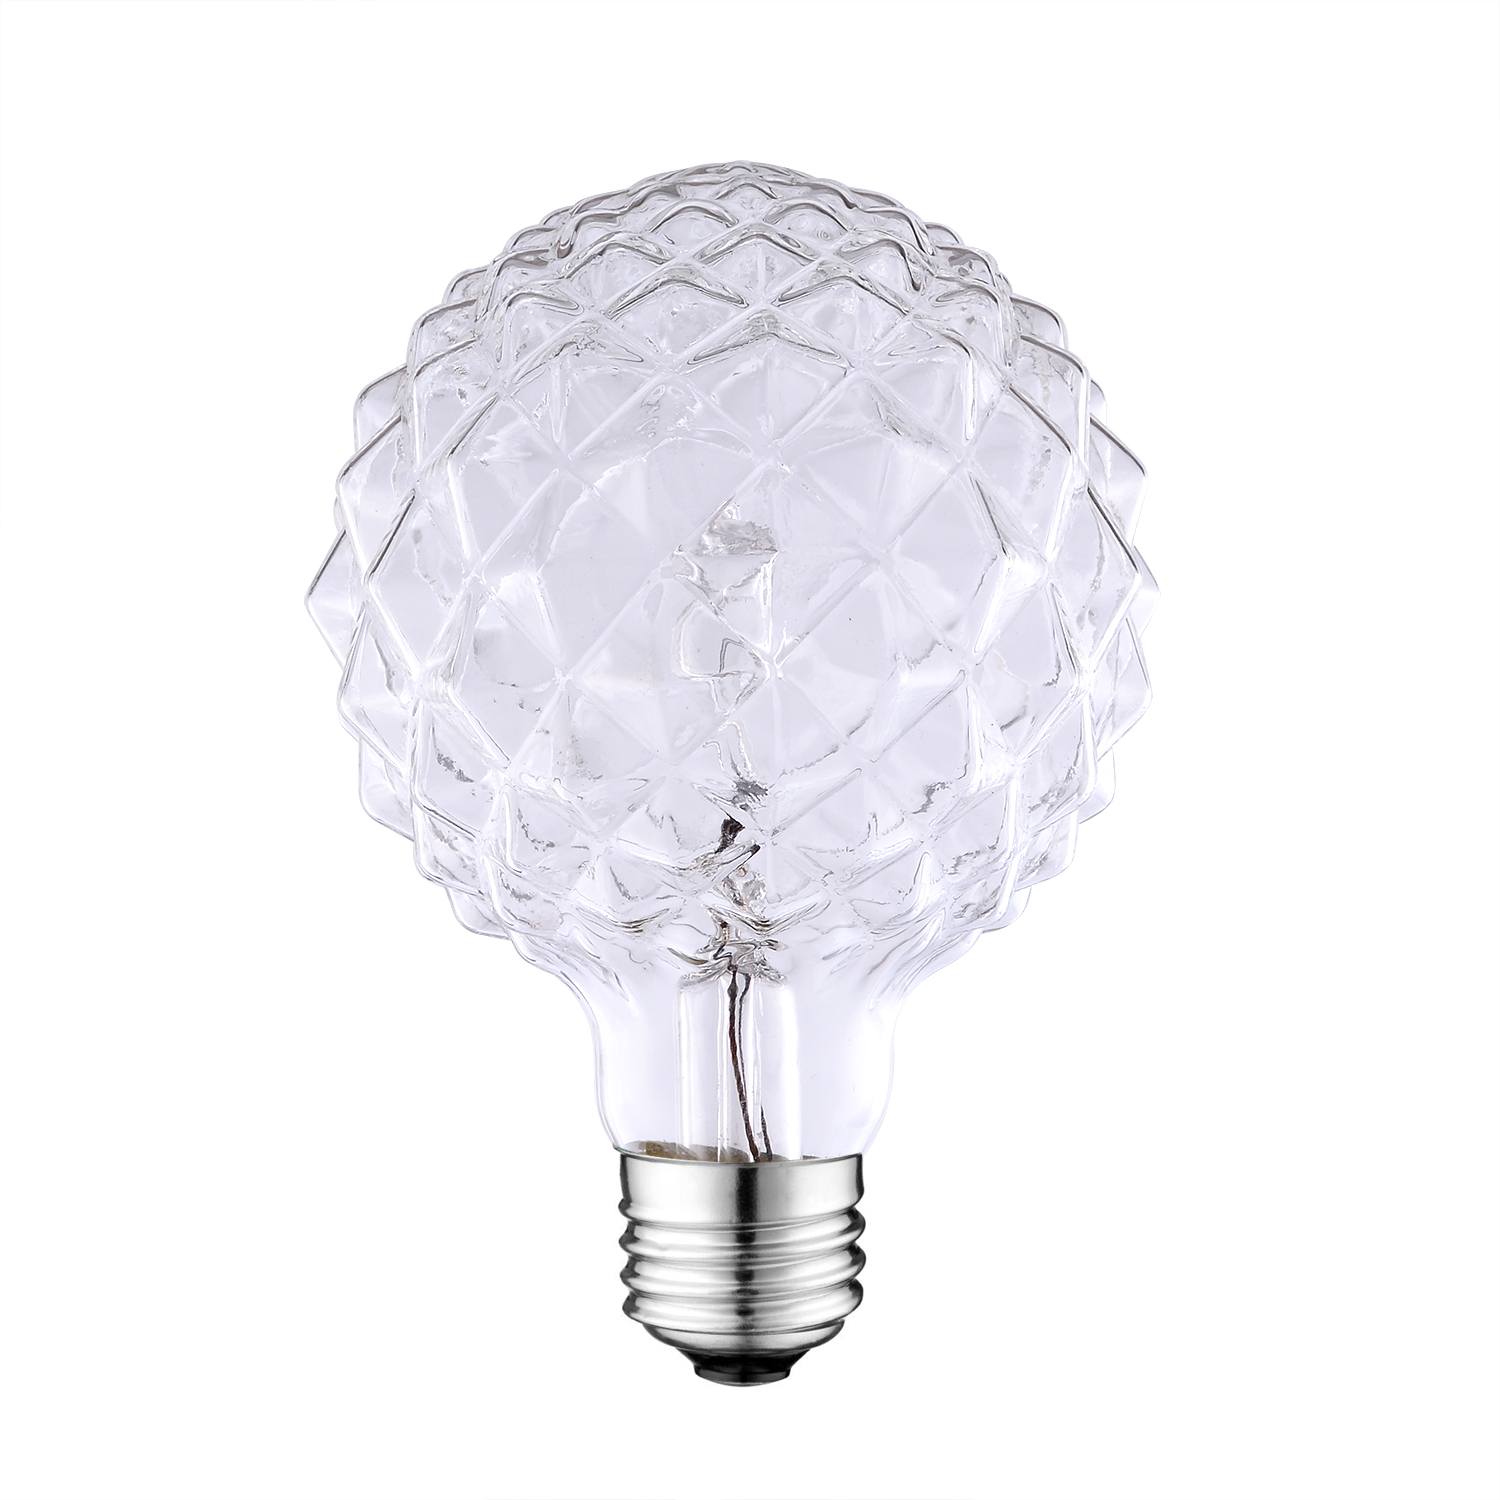 D95 E27 crystal cut light bulbs